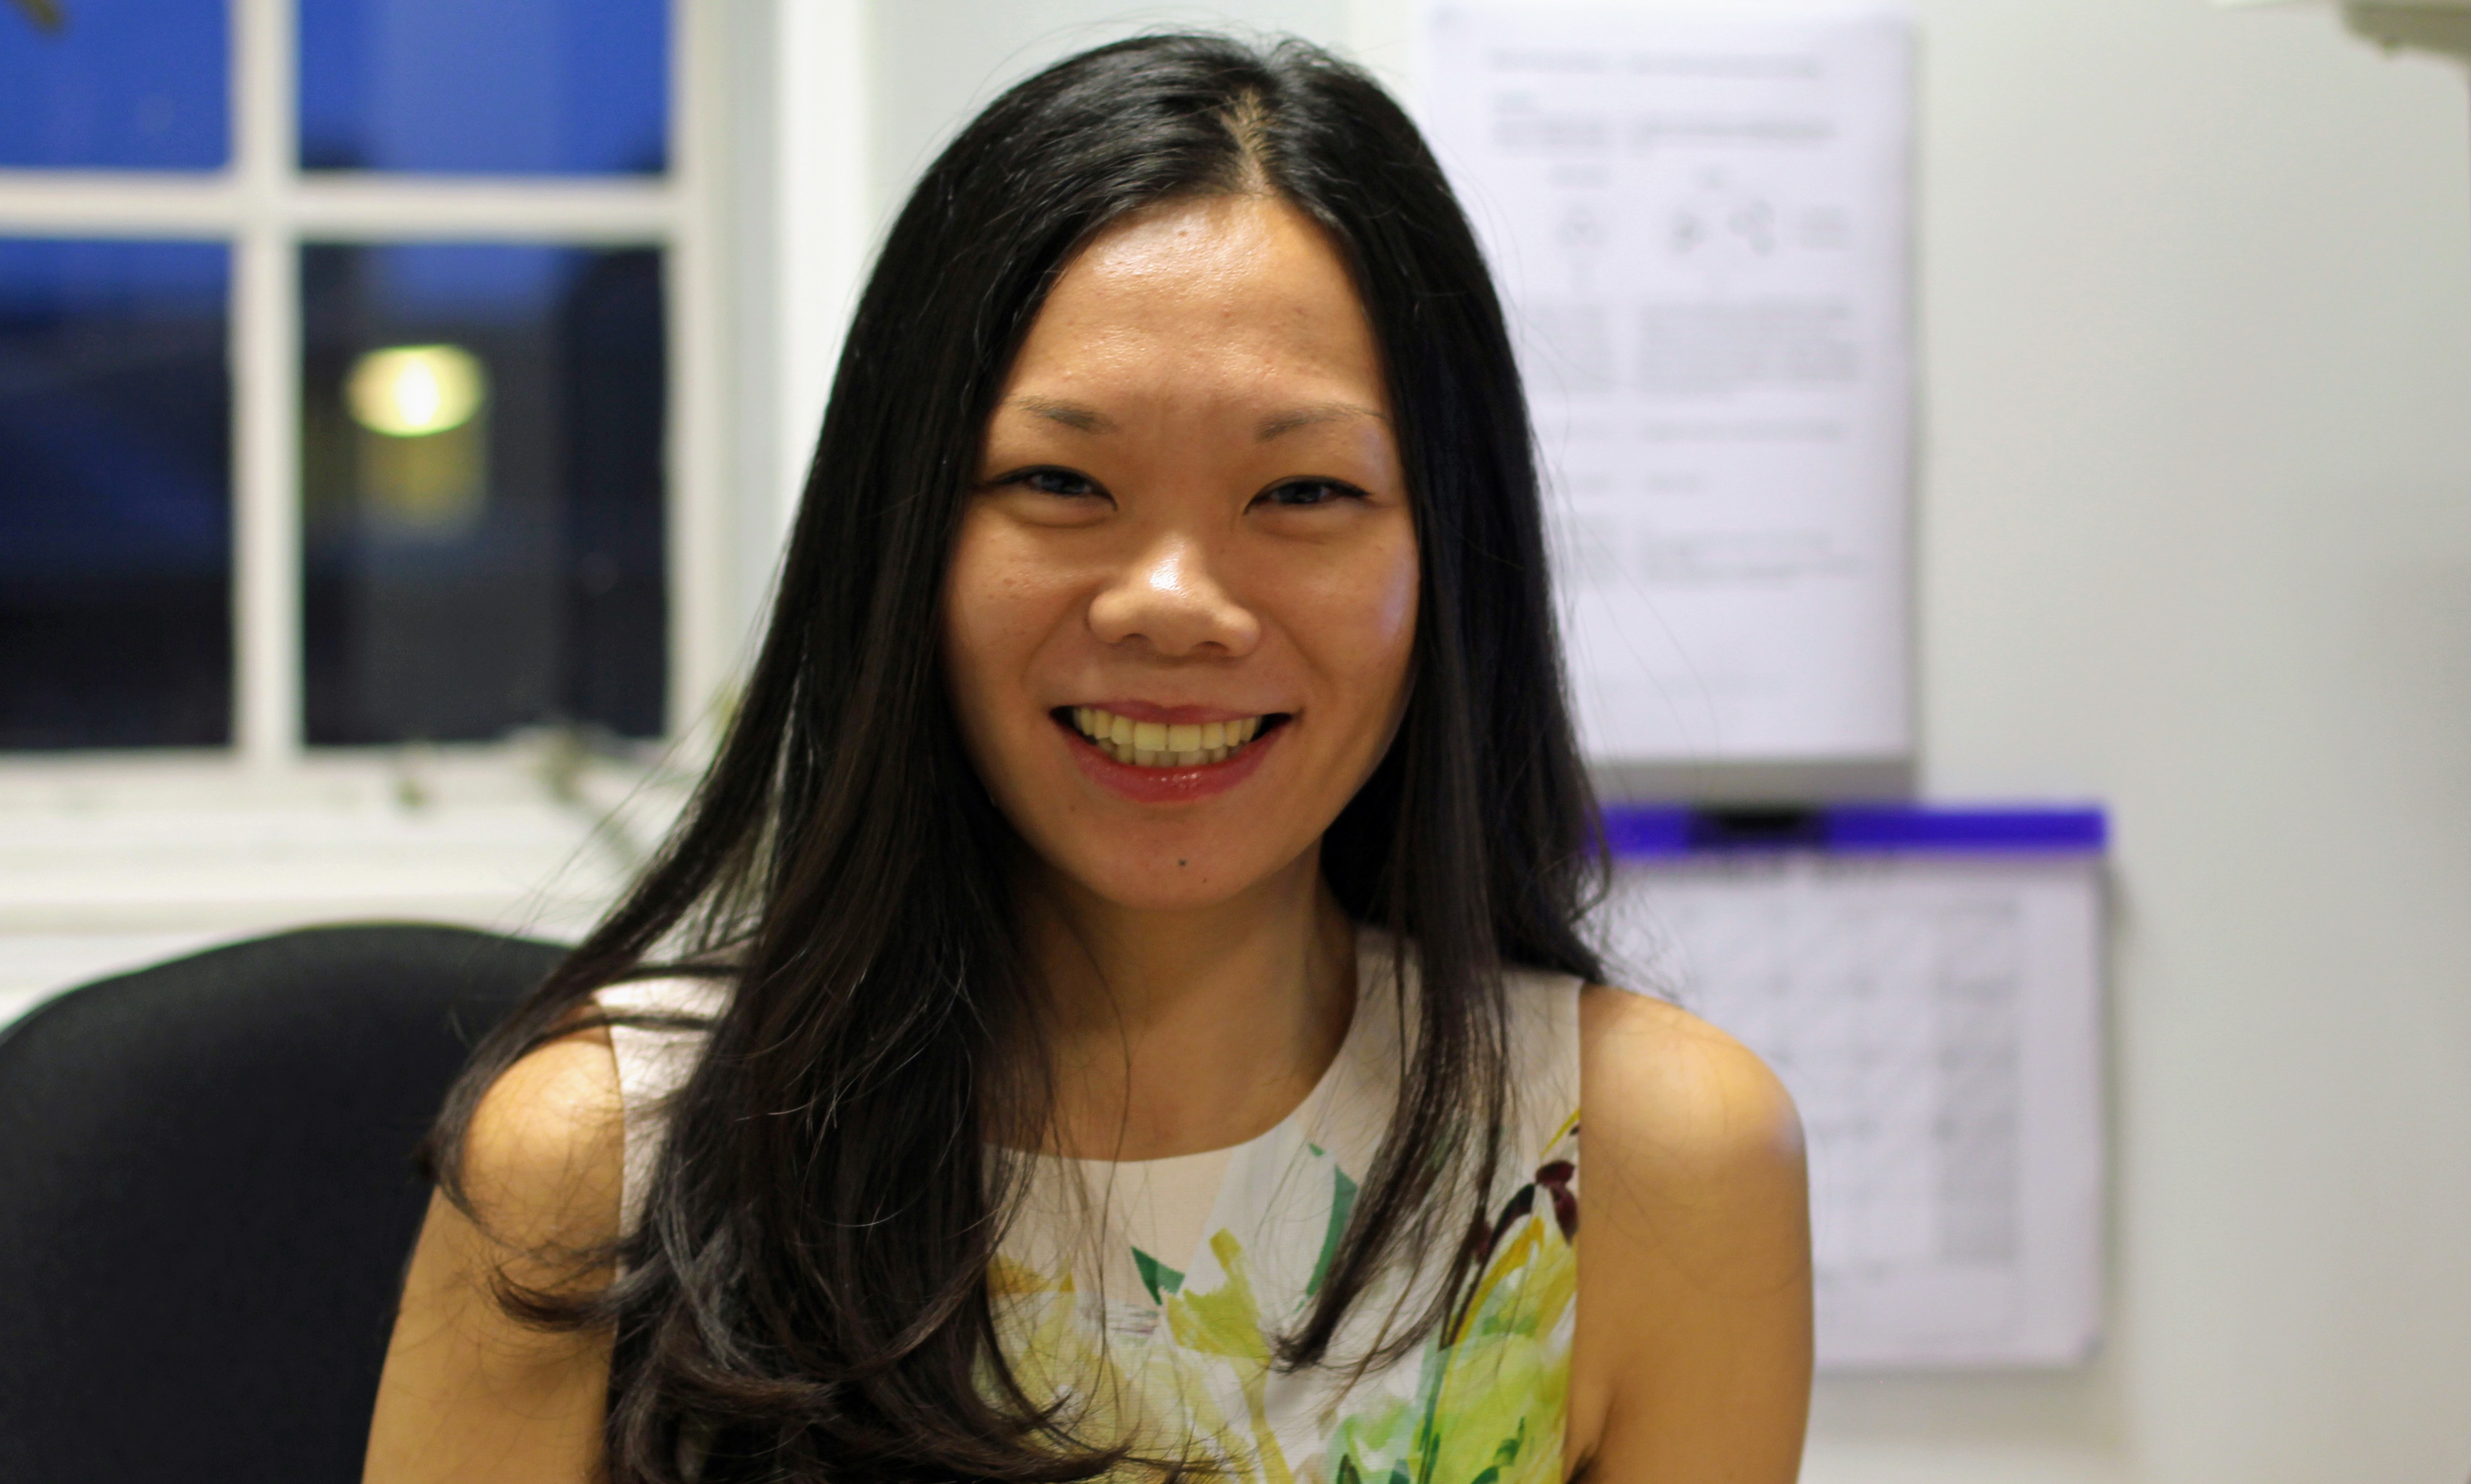 Assistant Professor Victoria Leong